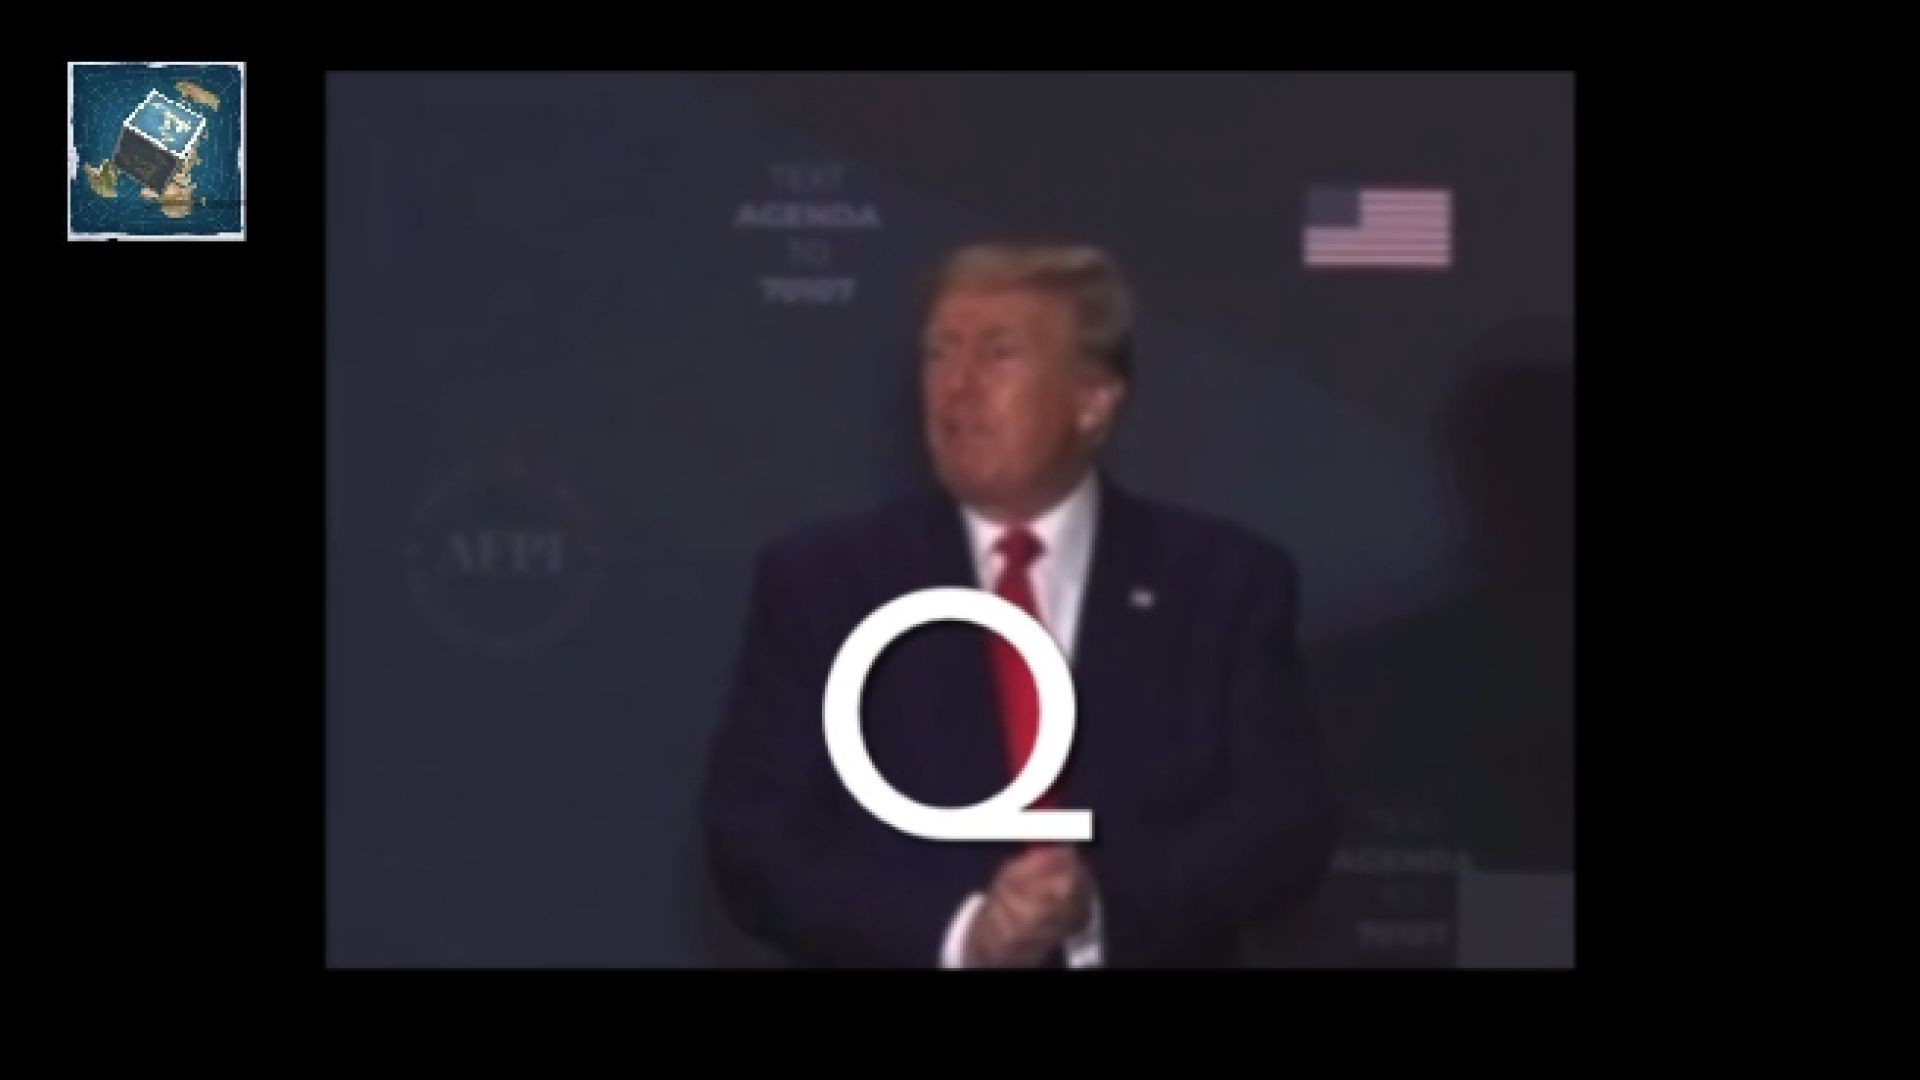 Q - Trump in DC